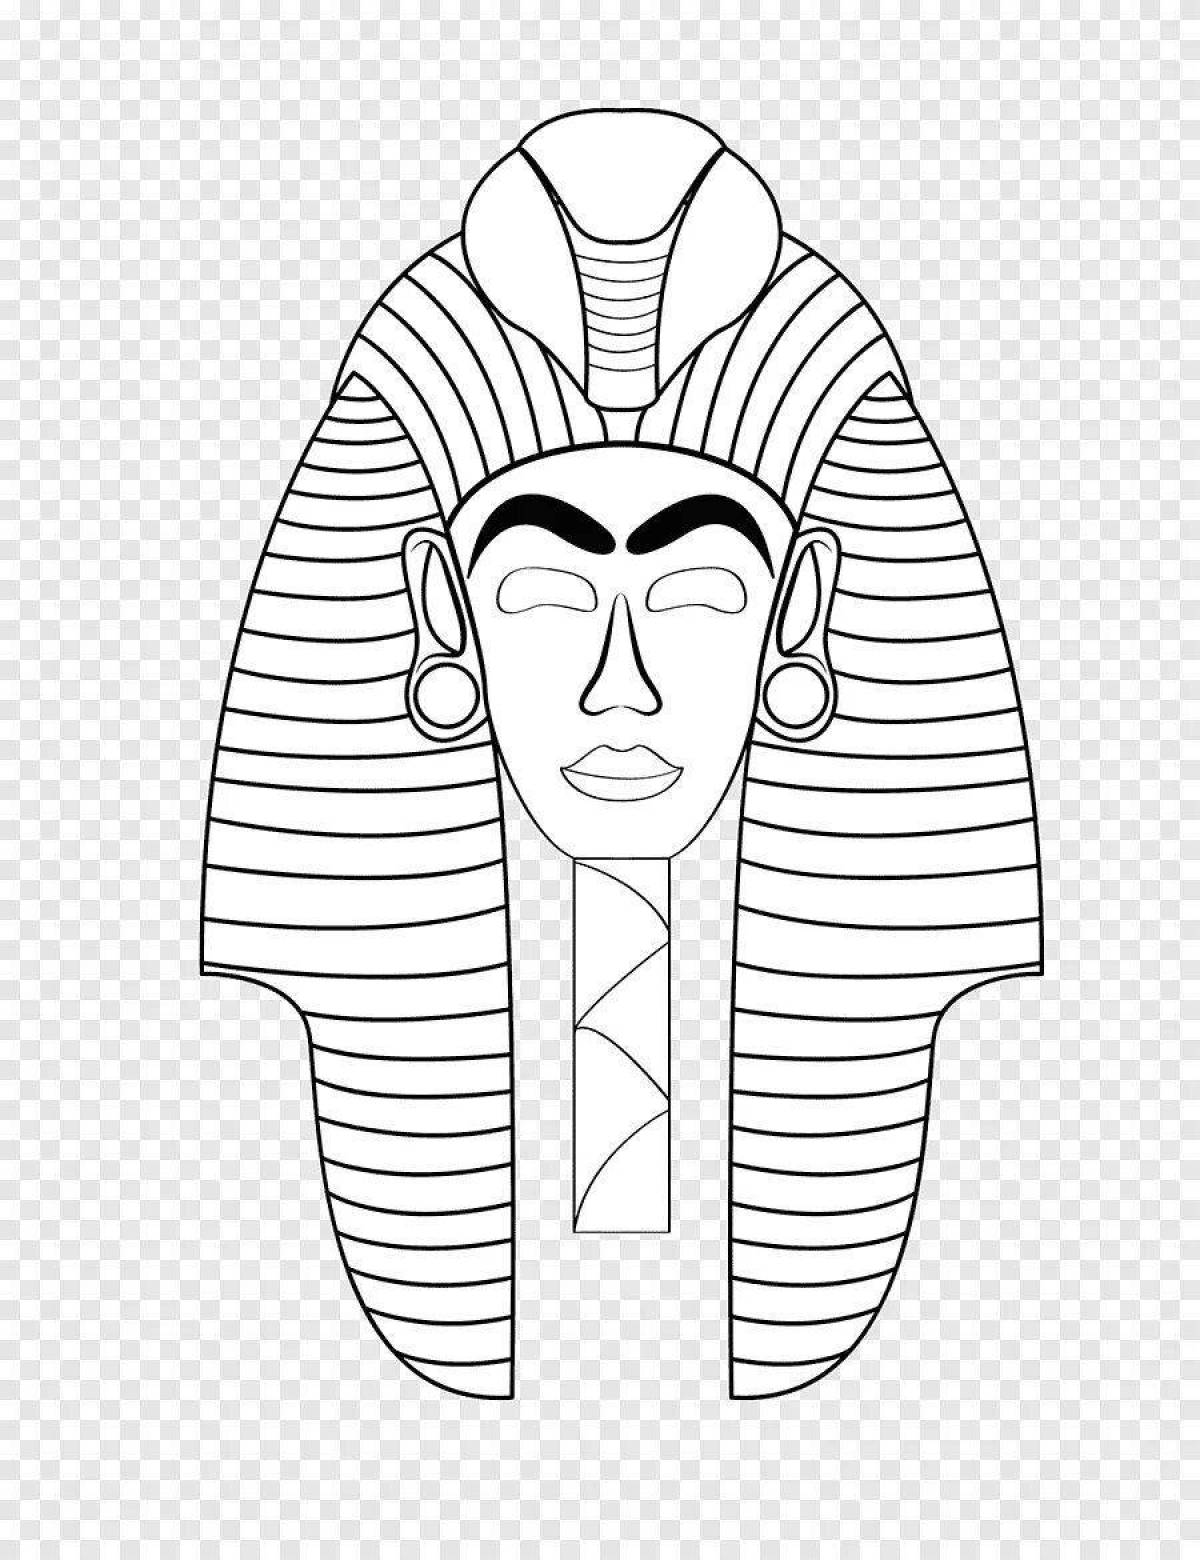 Coloring page shiny mask of pharaoh tutankhamun